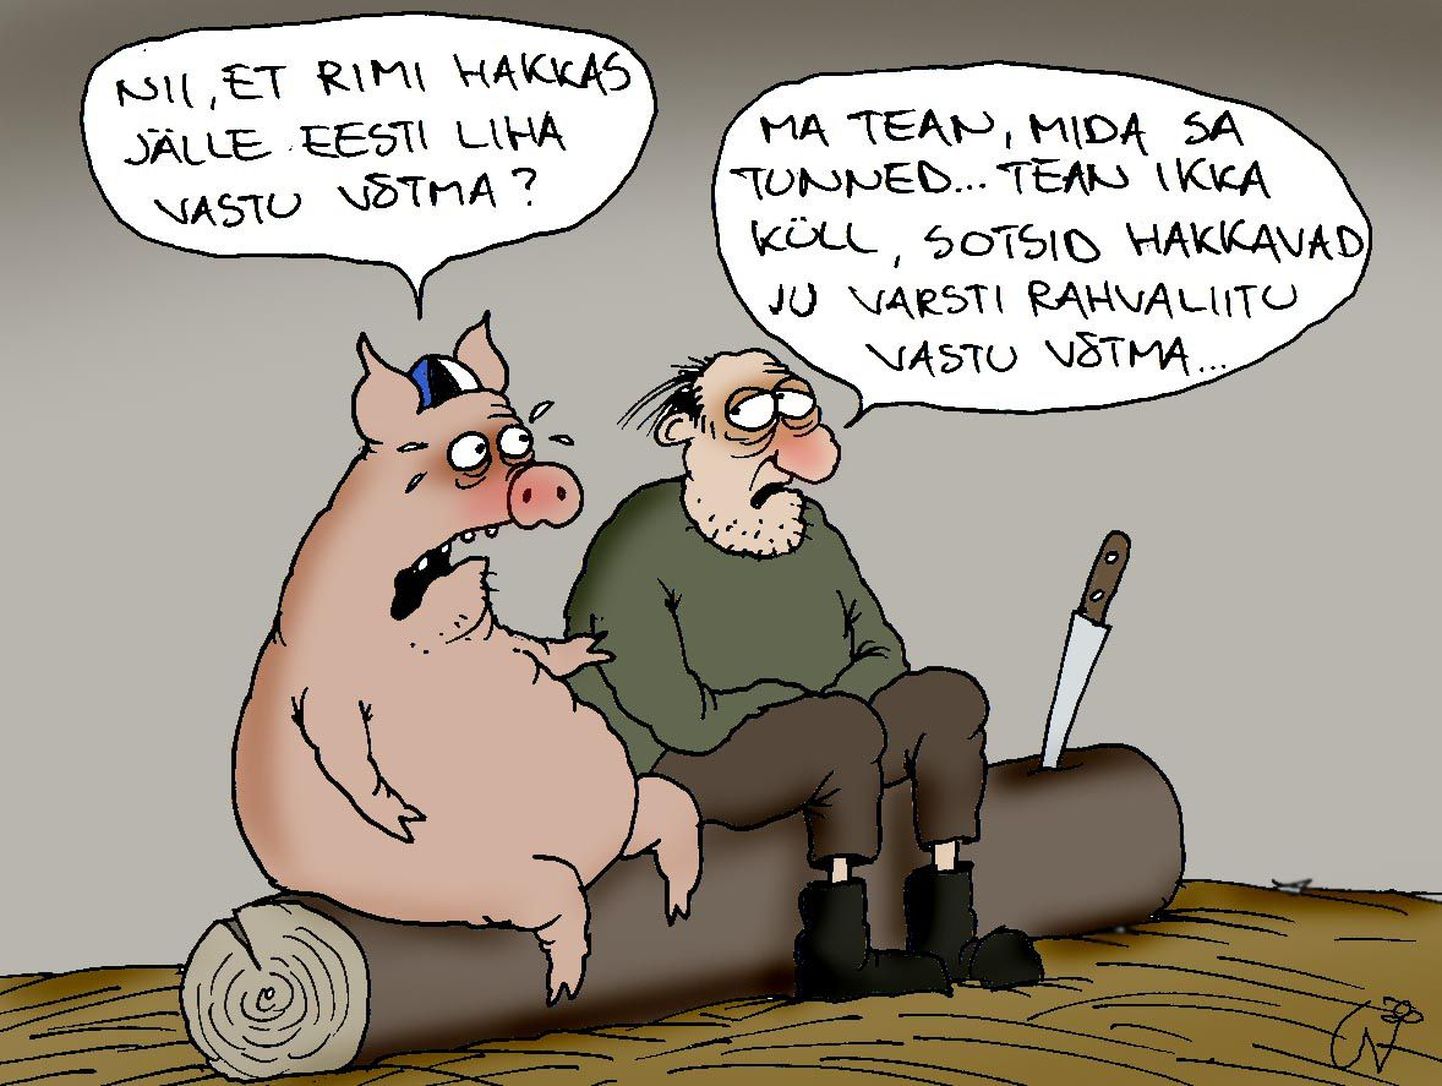 Rimi hakkas jälle Eesti liha müüma ja sotsid ja Rahvaliit tahavad ühineda.